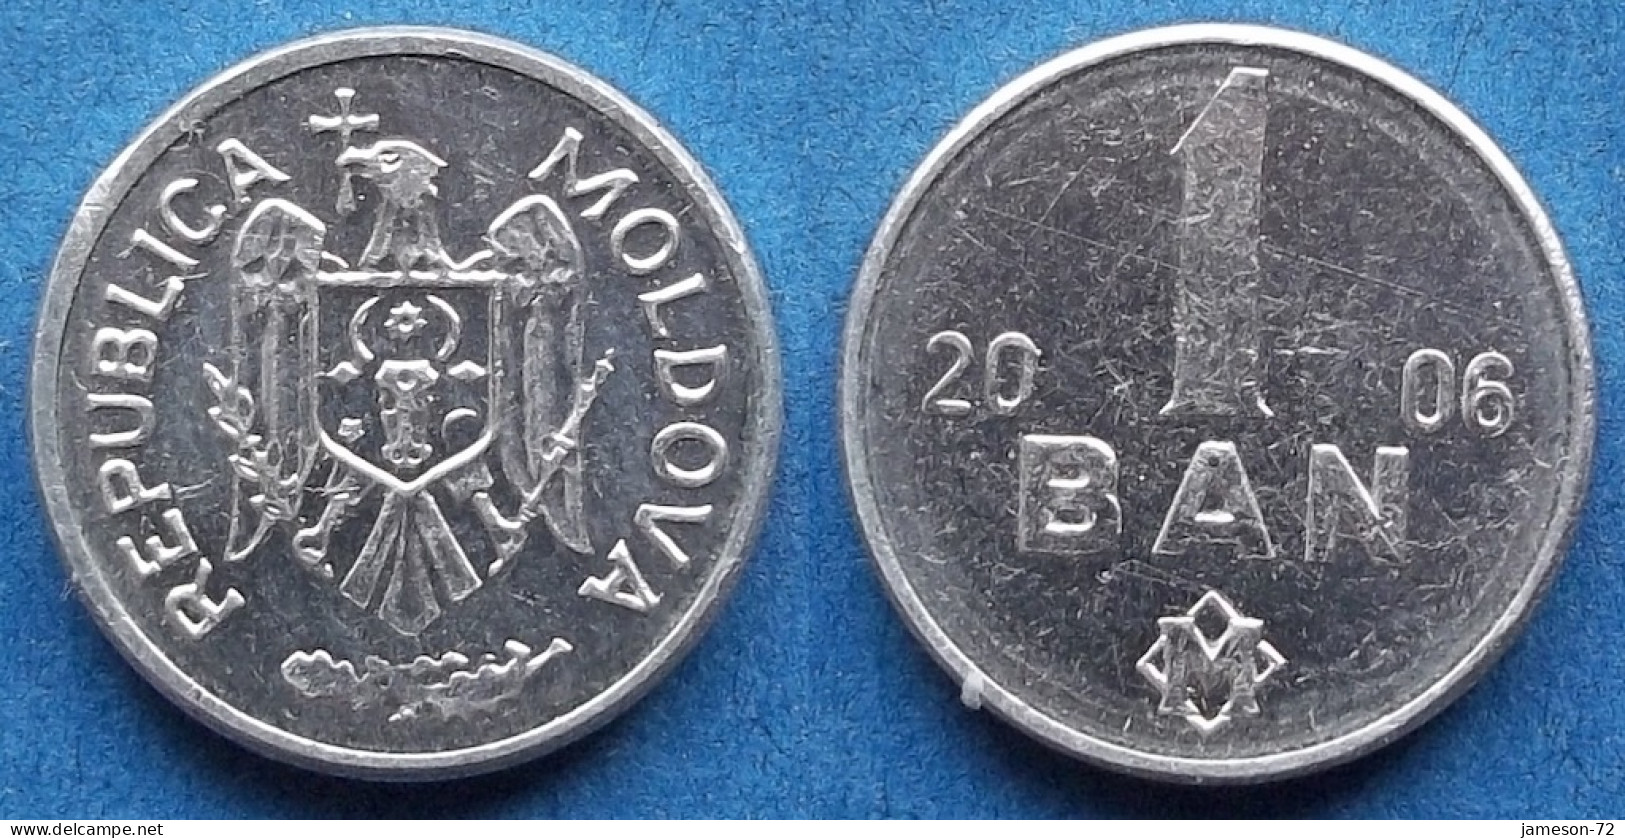 MOLDOVA - 1 Ban 2006 KM# 1 Republic (1991) - Edelweiss Coins - Moldawien (Moldau)